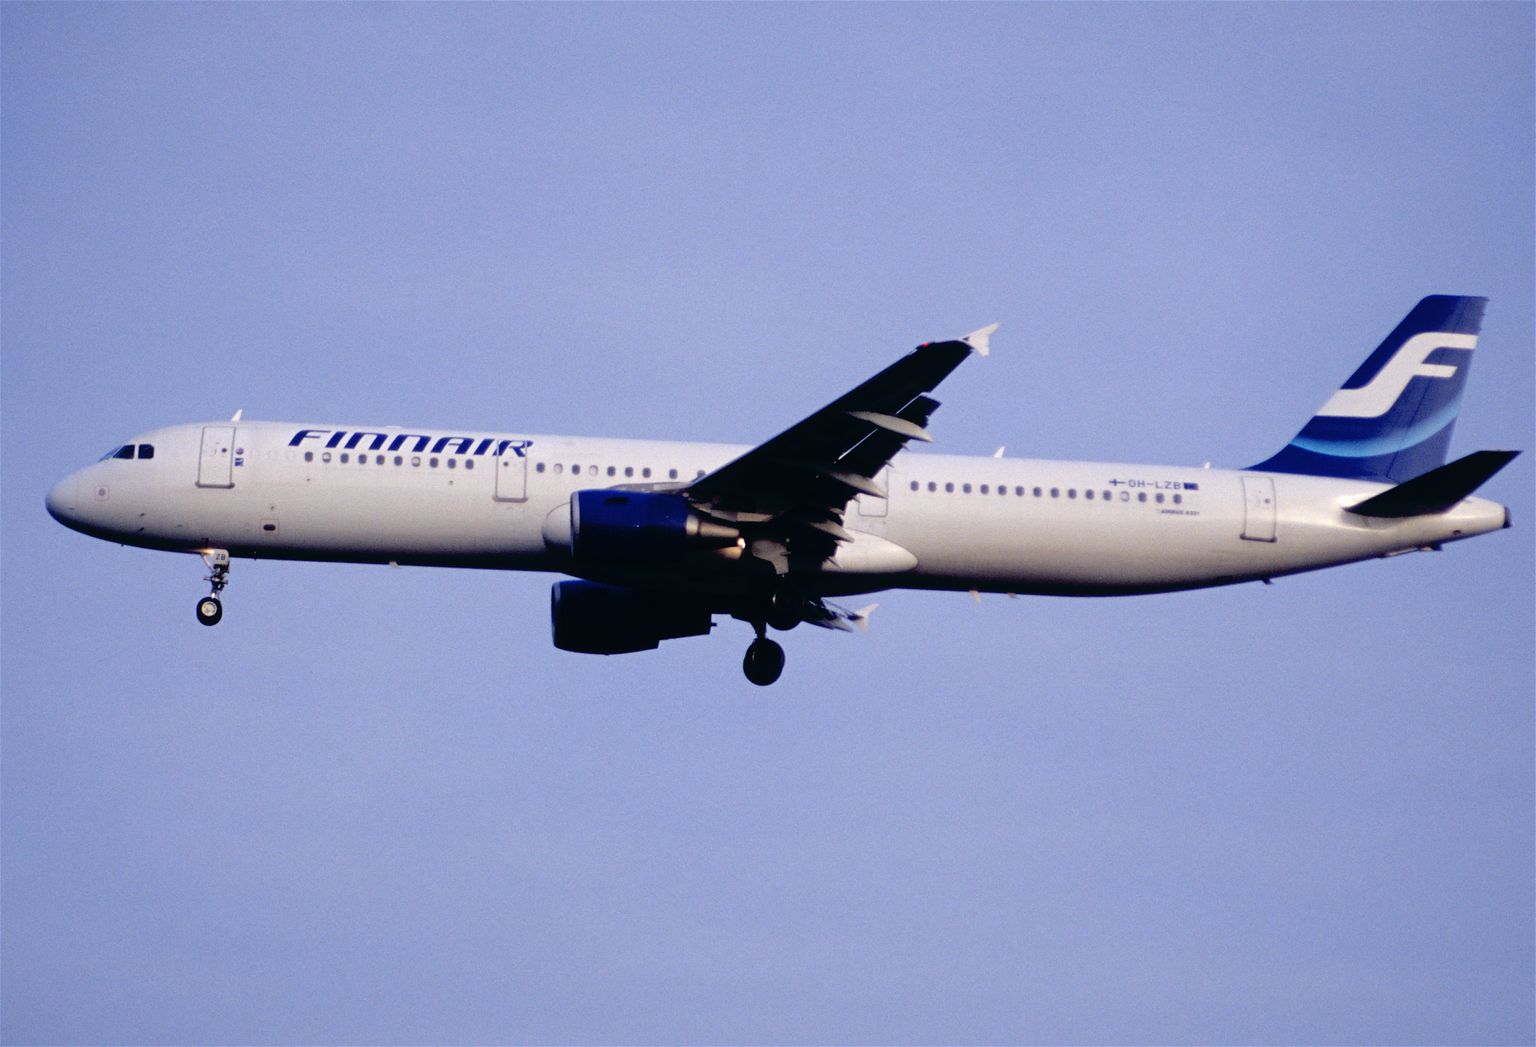 Finnairi Airbus 321 lennuk on kasutusel peamiselt Euroopa liinidel. Keskmiselt 8 aastat vanad Airbus 321 lennukite kasutuselevõtmise aegu sisaldasid Finnairi piletid märksa enam komponente.